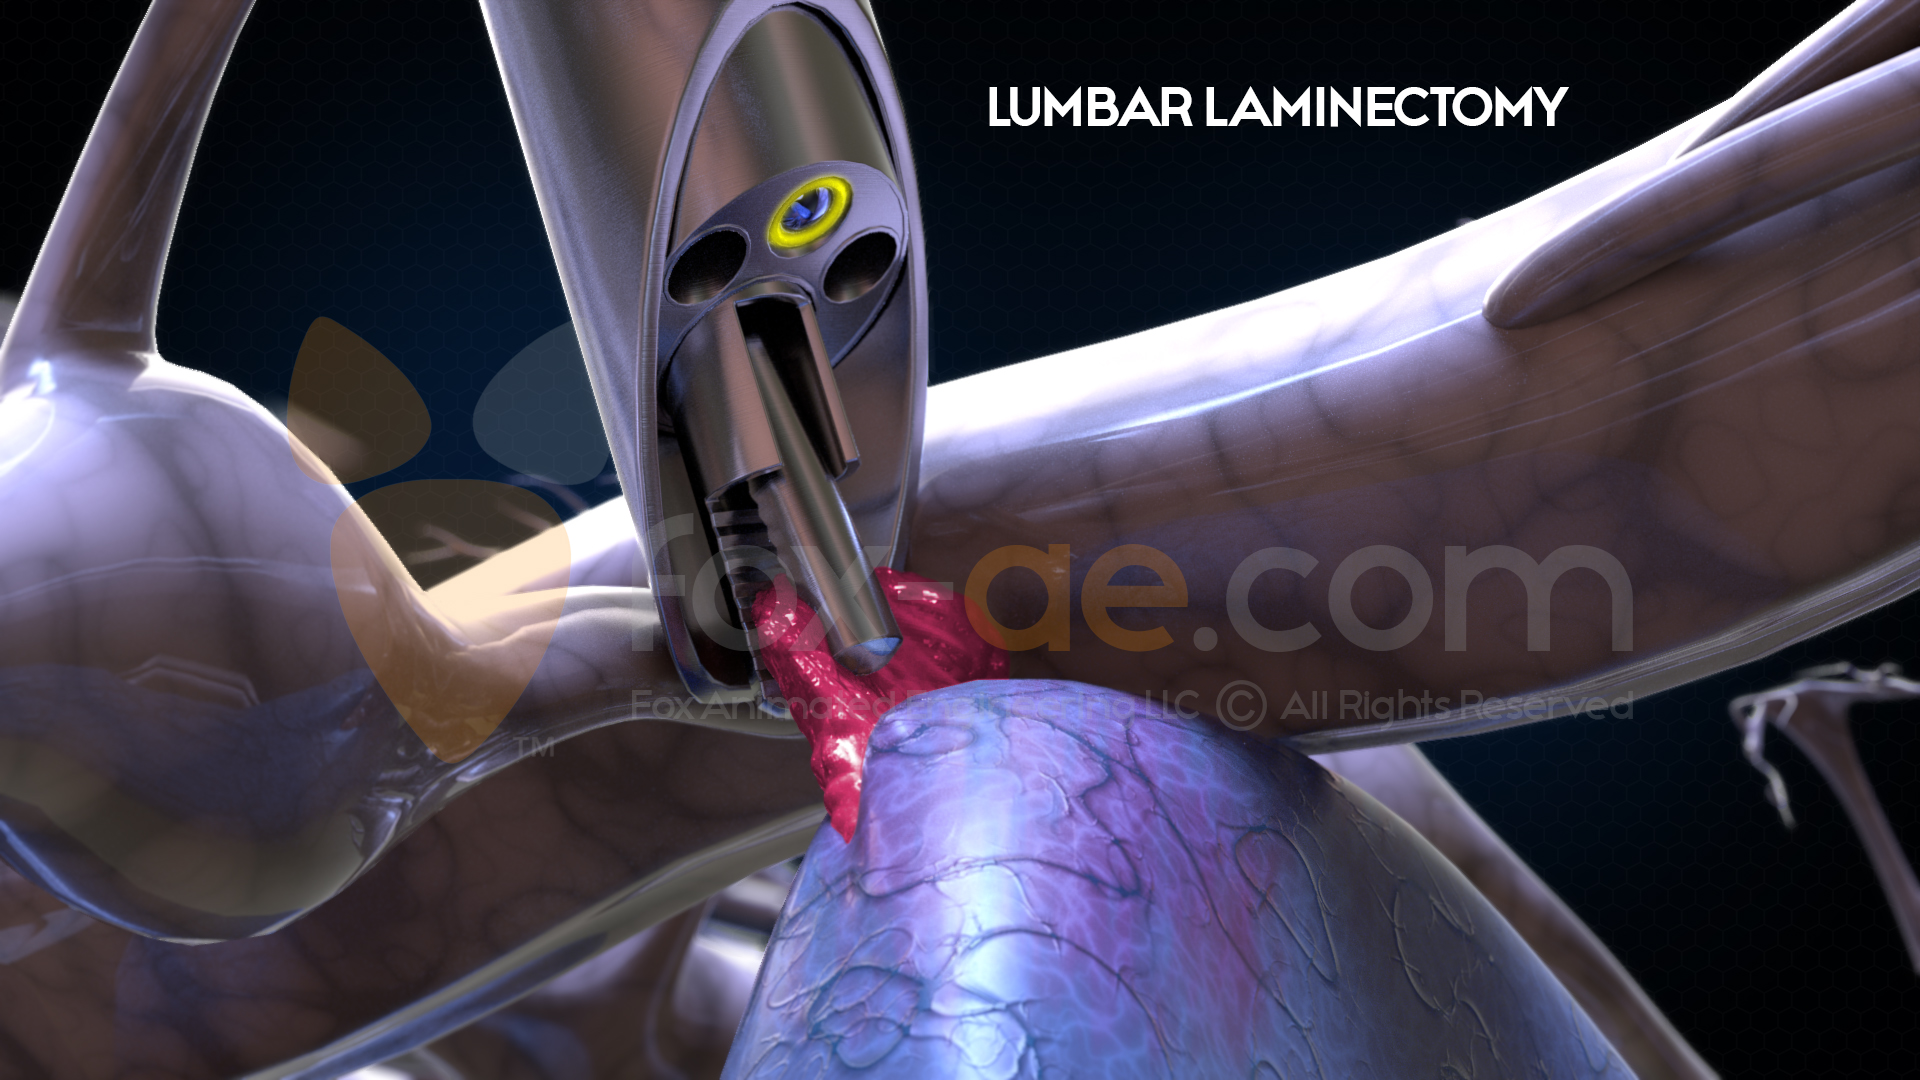 Lumbar-Laminectomy